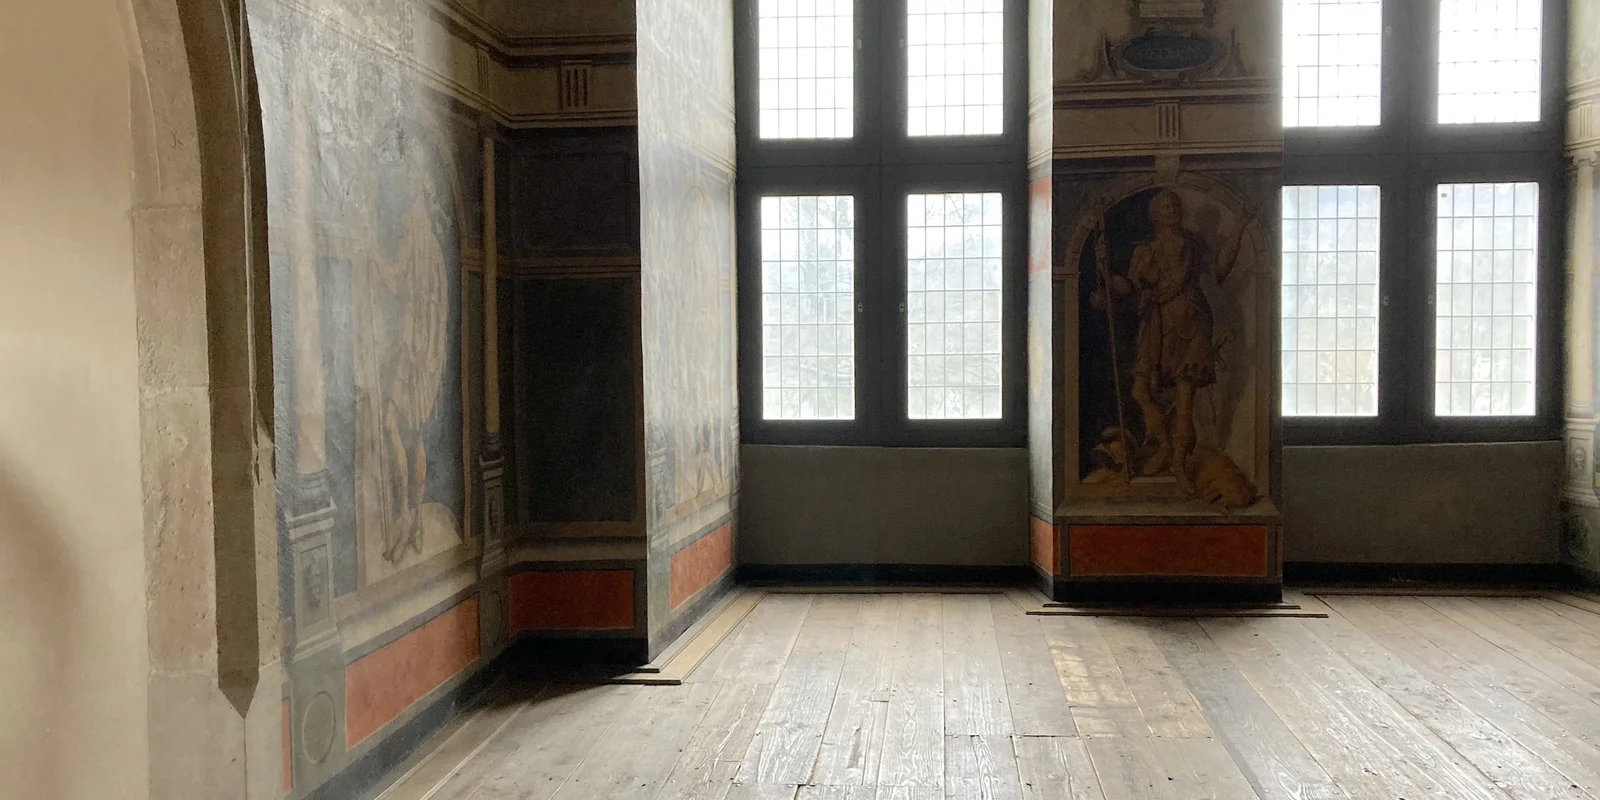 Blick in einen Raum mit bunten Wandfresken und hohen geschnitzten Holzdecken, erhellt von zwei raumhohen Fenstern